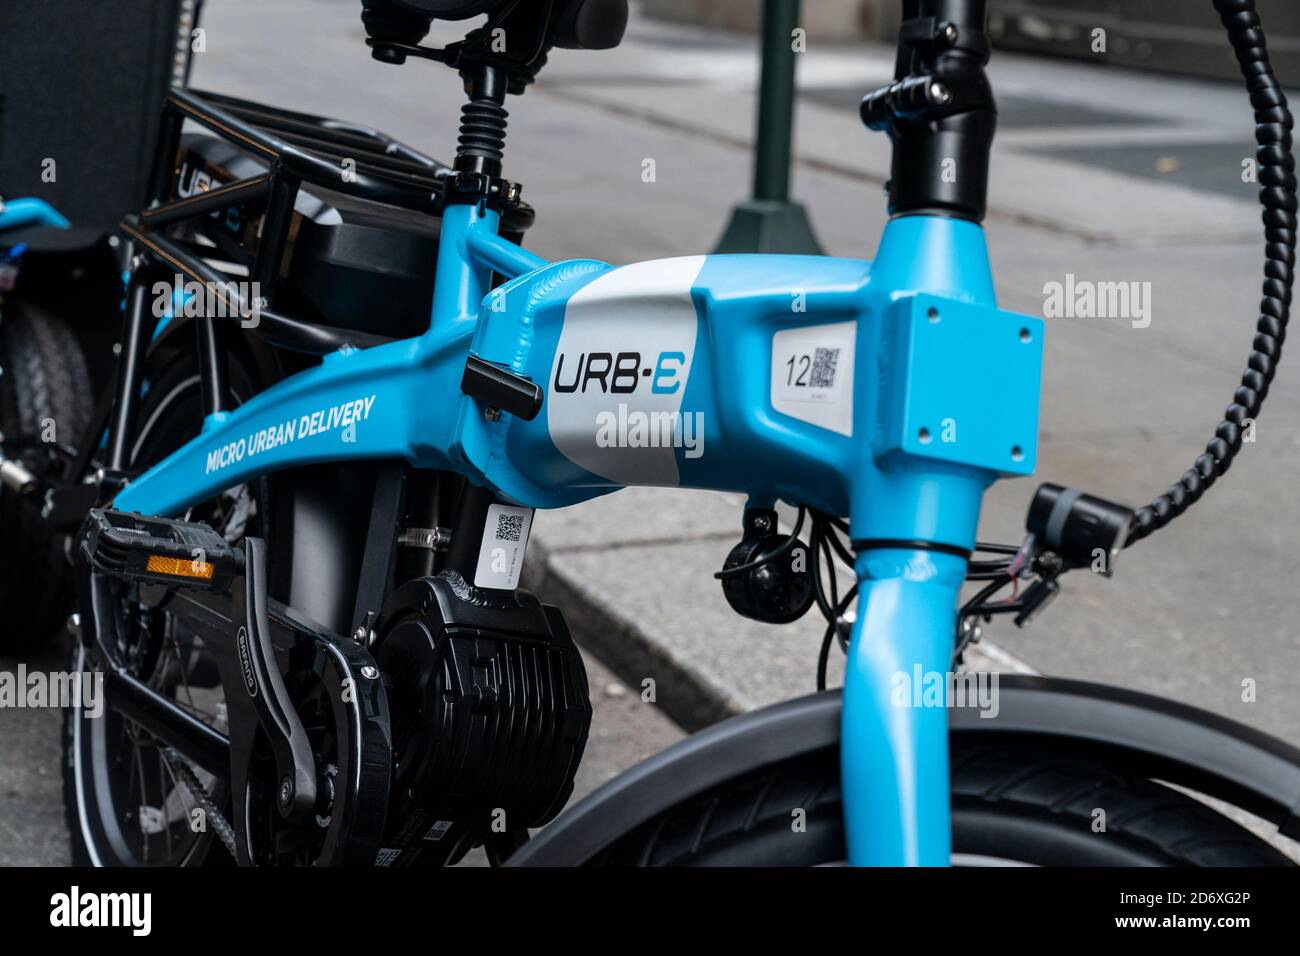 New York, États-Unis. 19 octobre 2020. Vue du vélo et de la remorque Urb-E  devant être utilisés par les employés d'Amazon pour la livraison à New York  le 19 octobre 2020. Afin